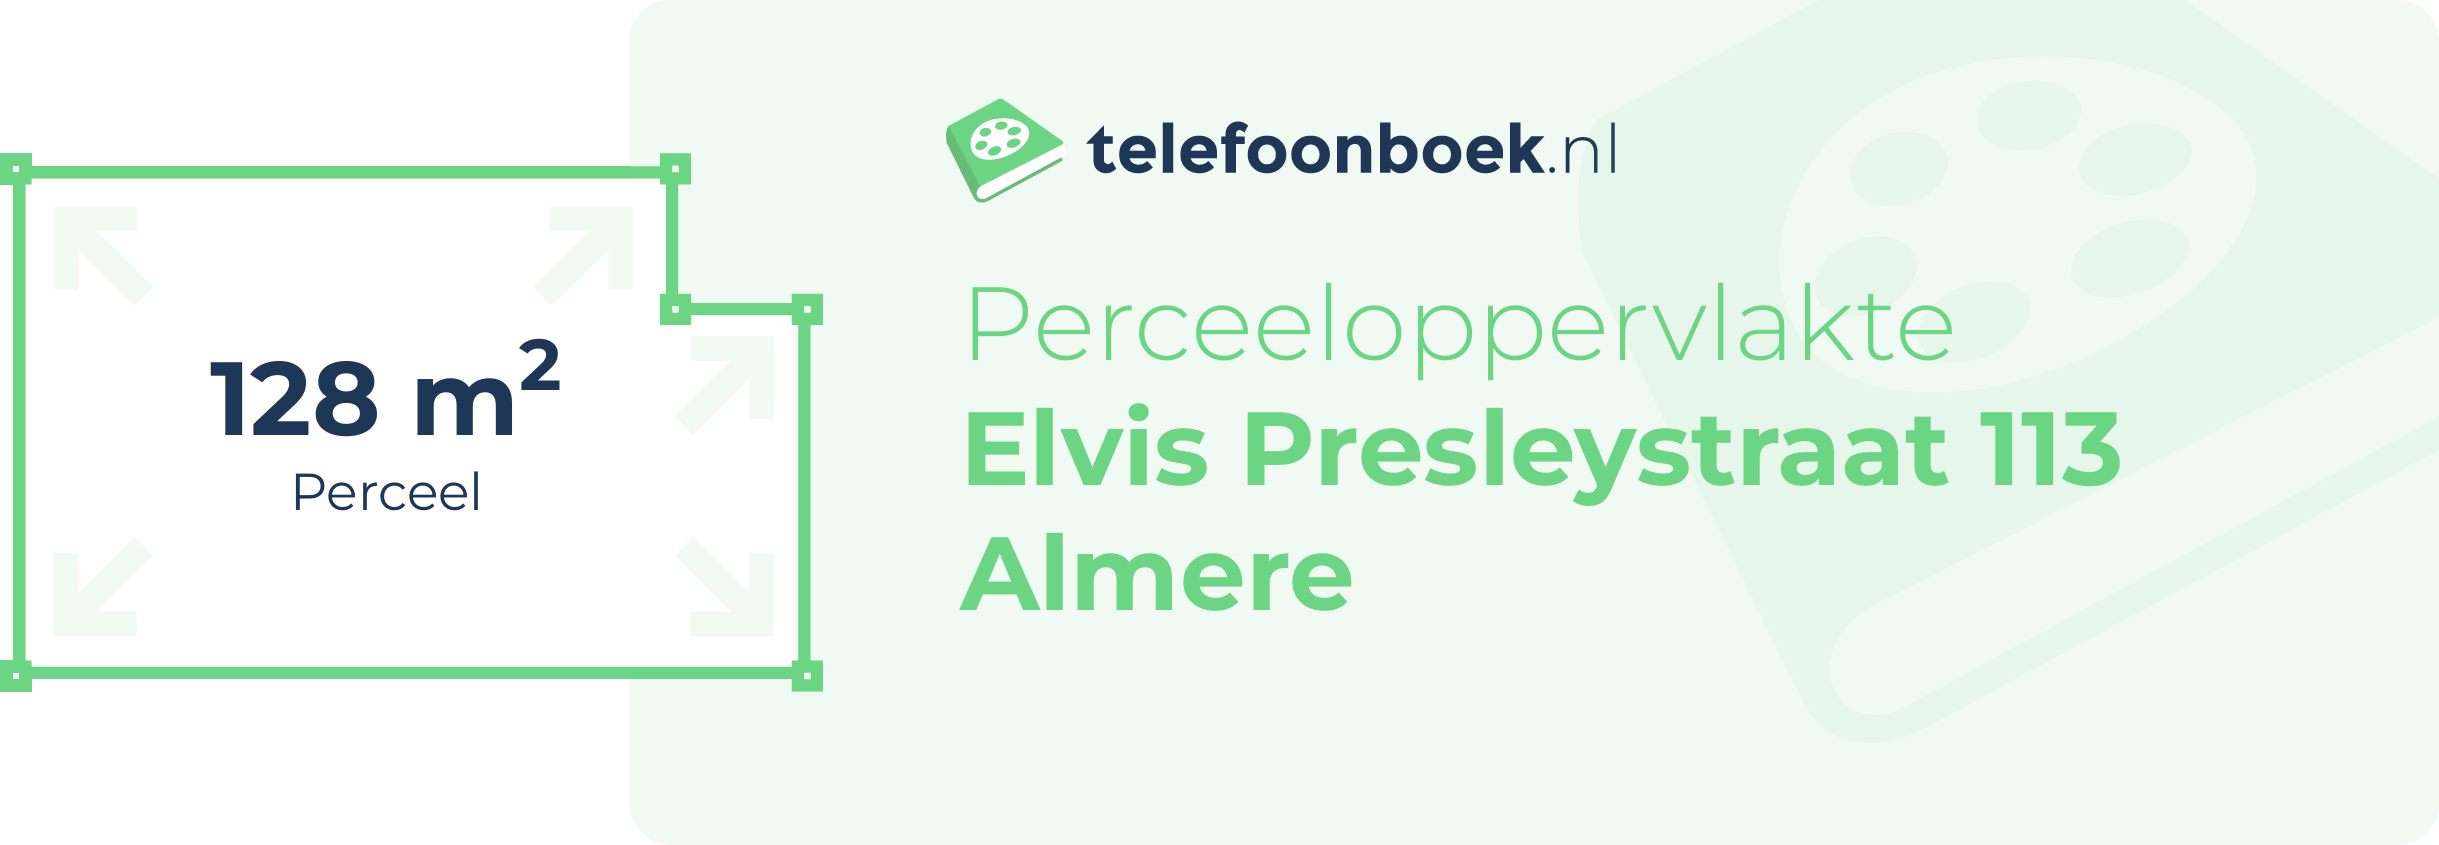 Perceeloppervlakte Elvis Presleystraat 113 Almere